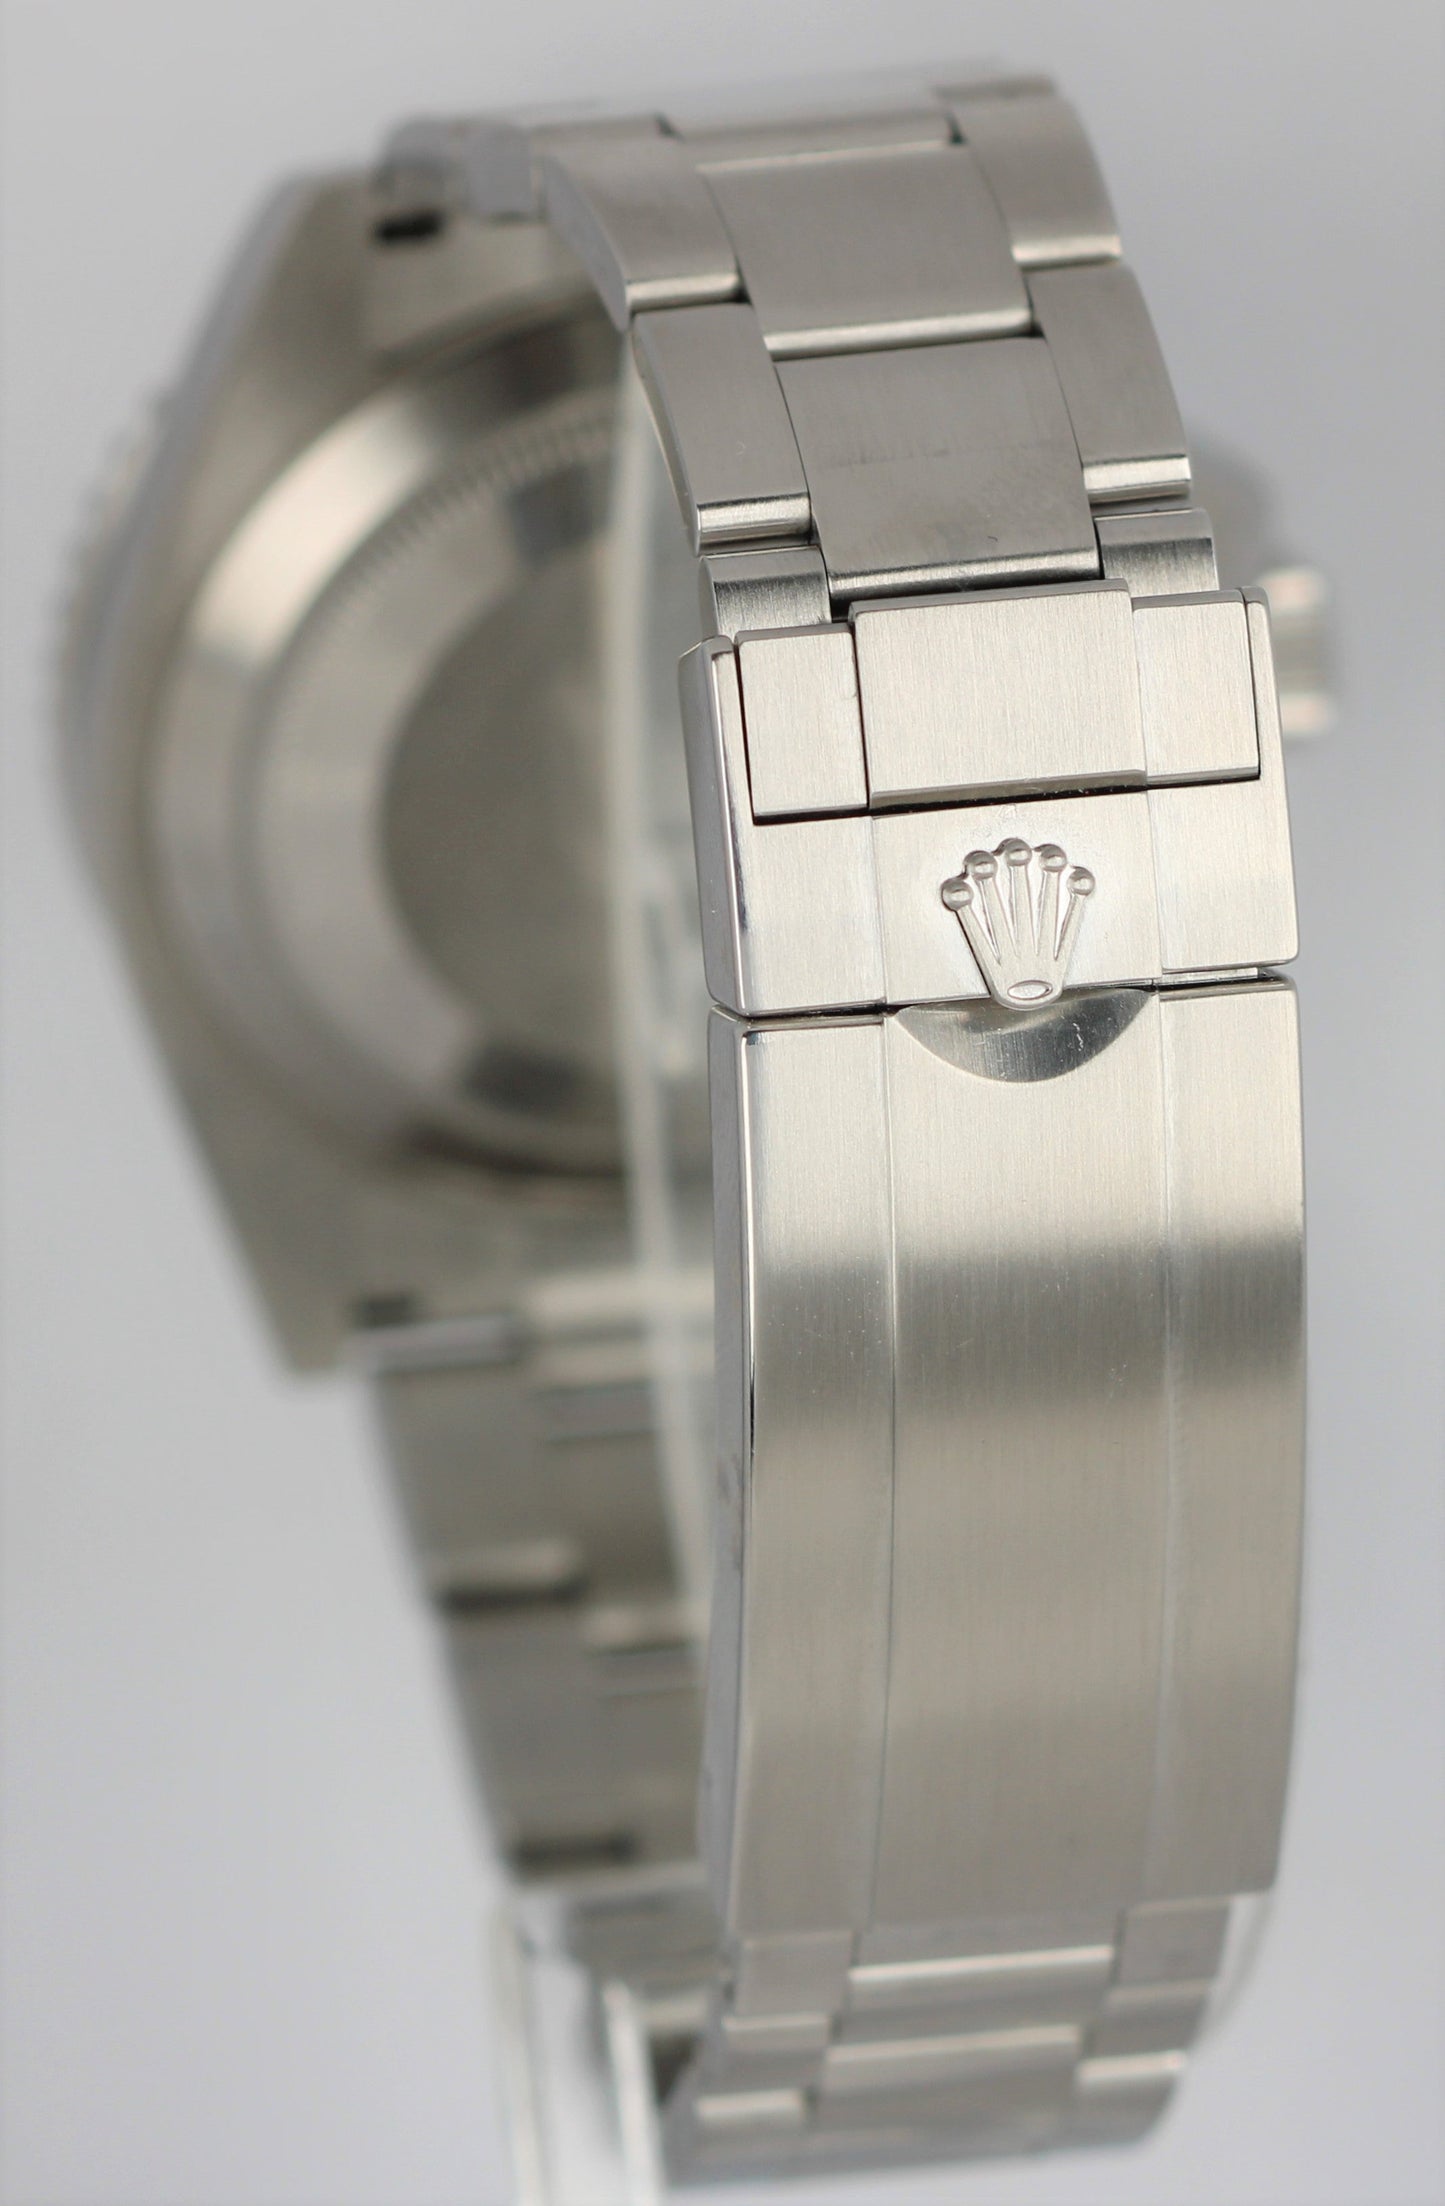 Rolex Submariner 41mm Date Stainless Black Ceramic Watch 126610 LN Watch